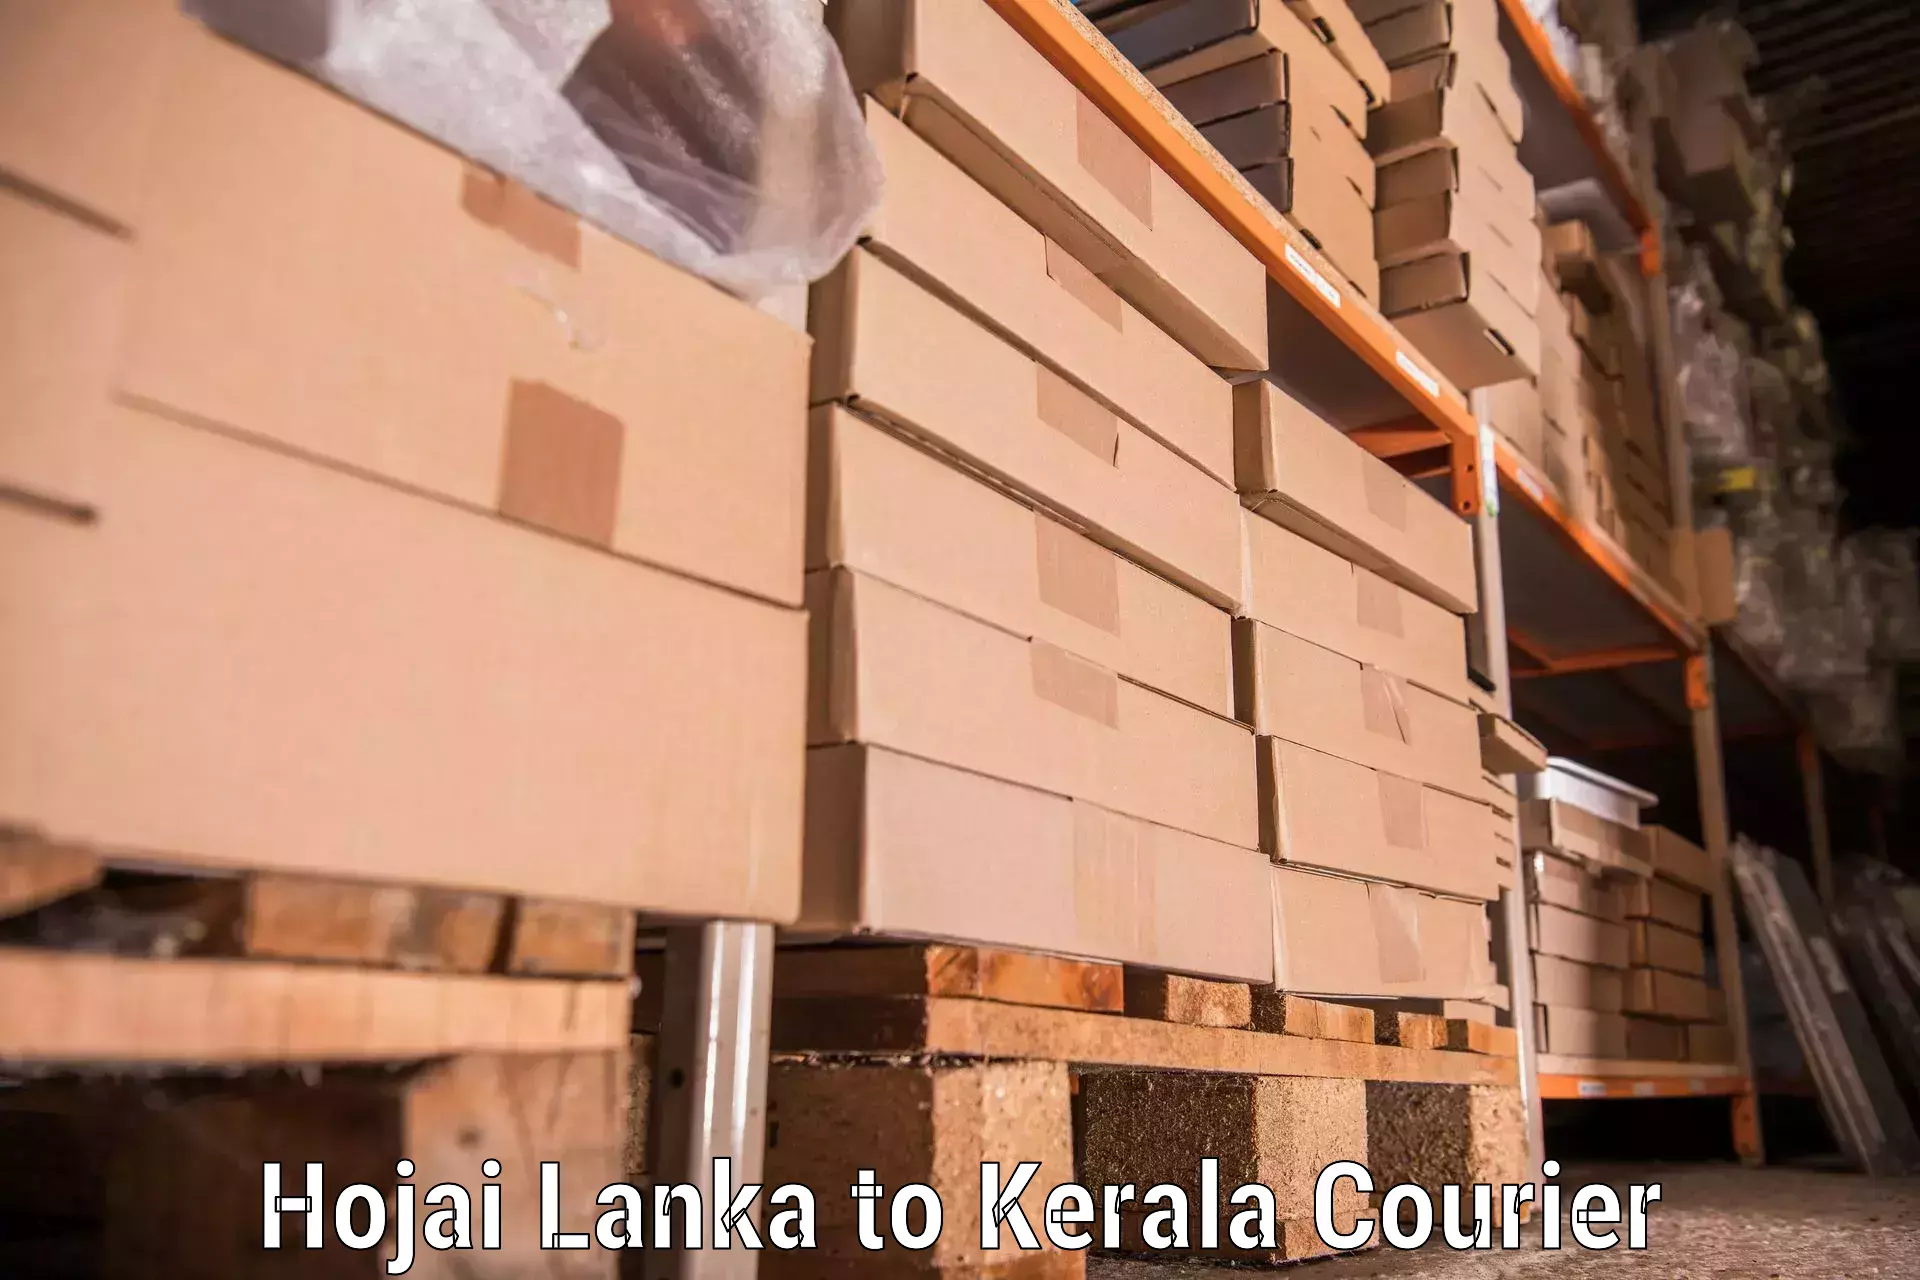 Full-service movers Hojai Lanka to Kerala